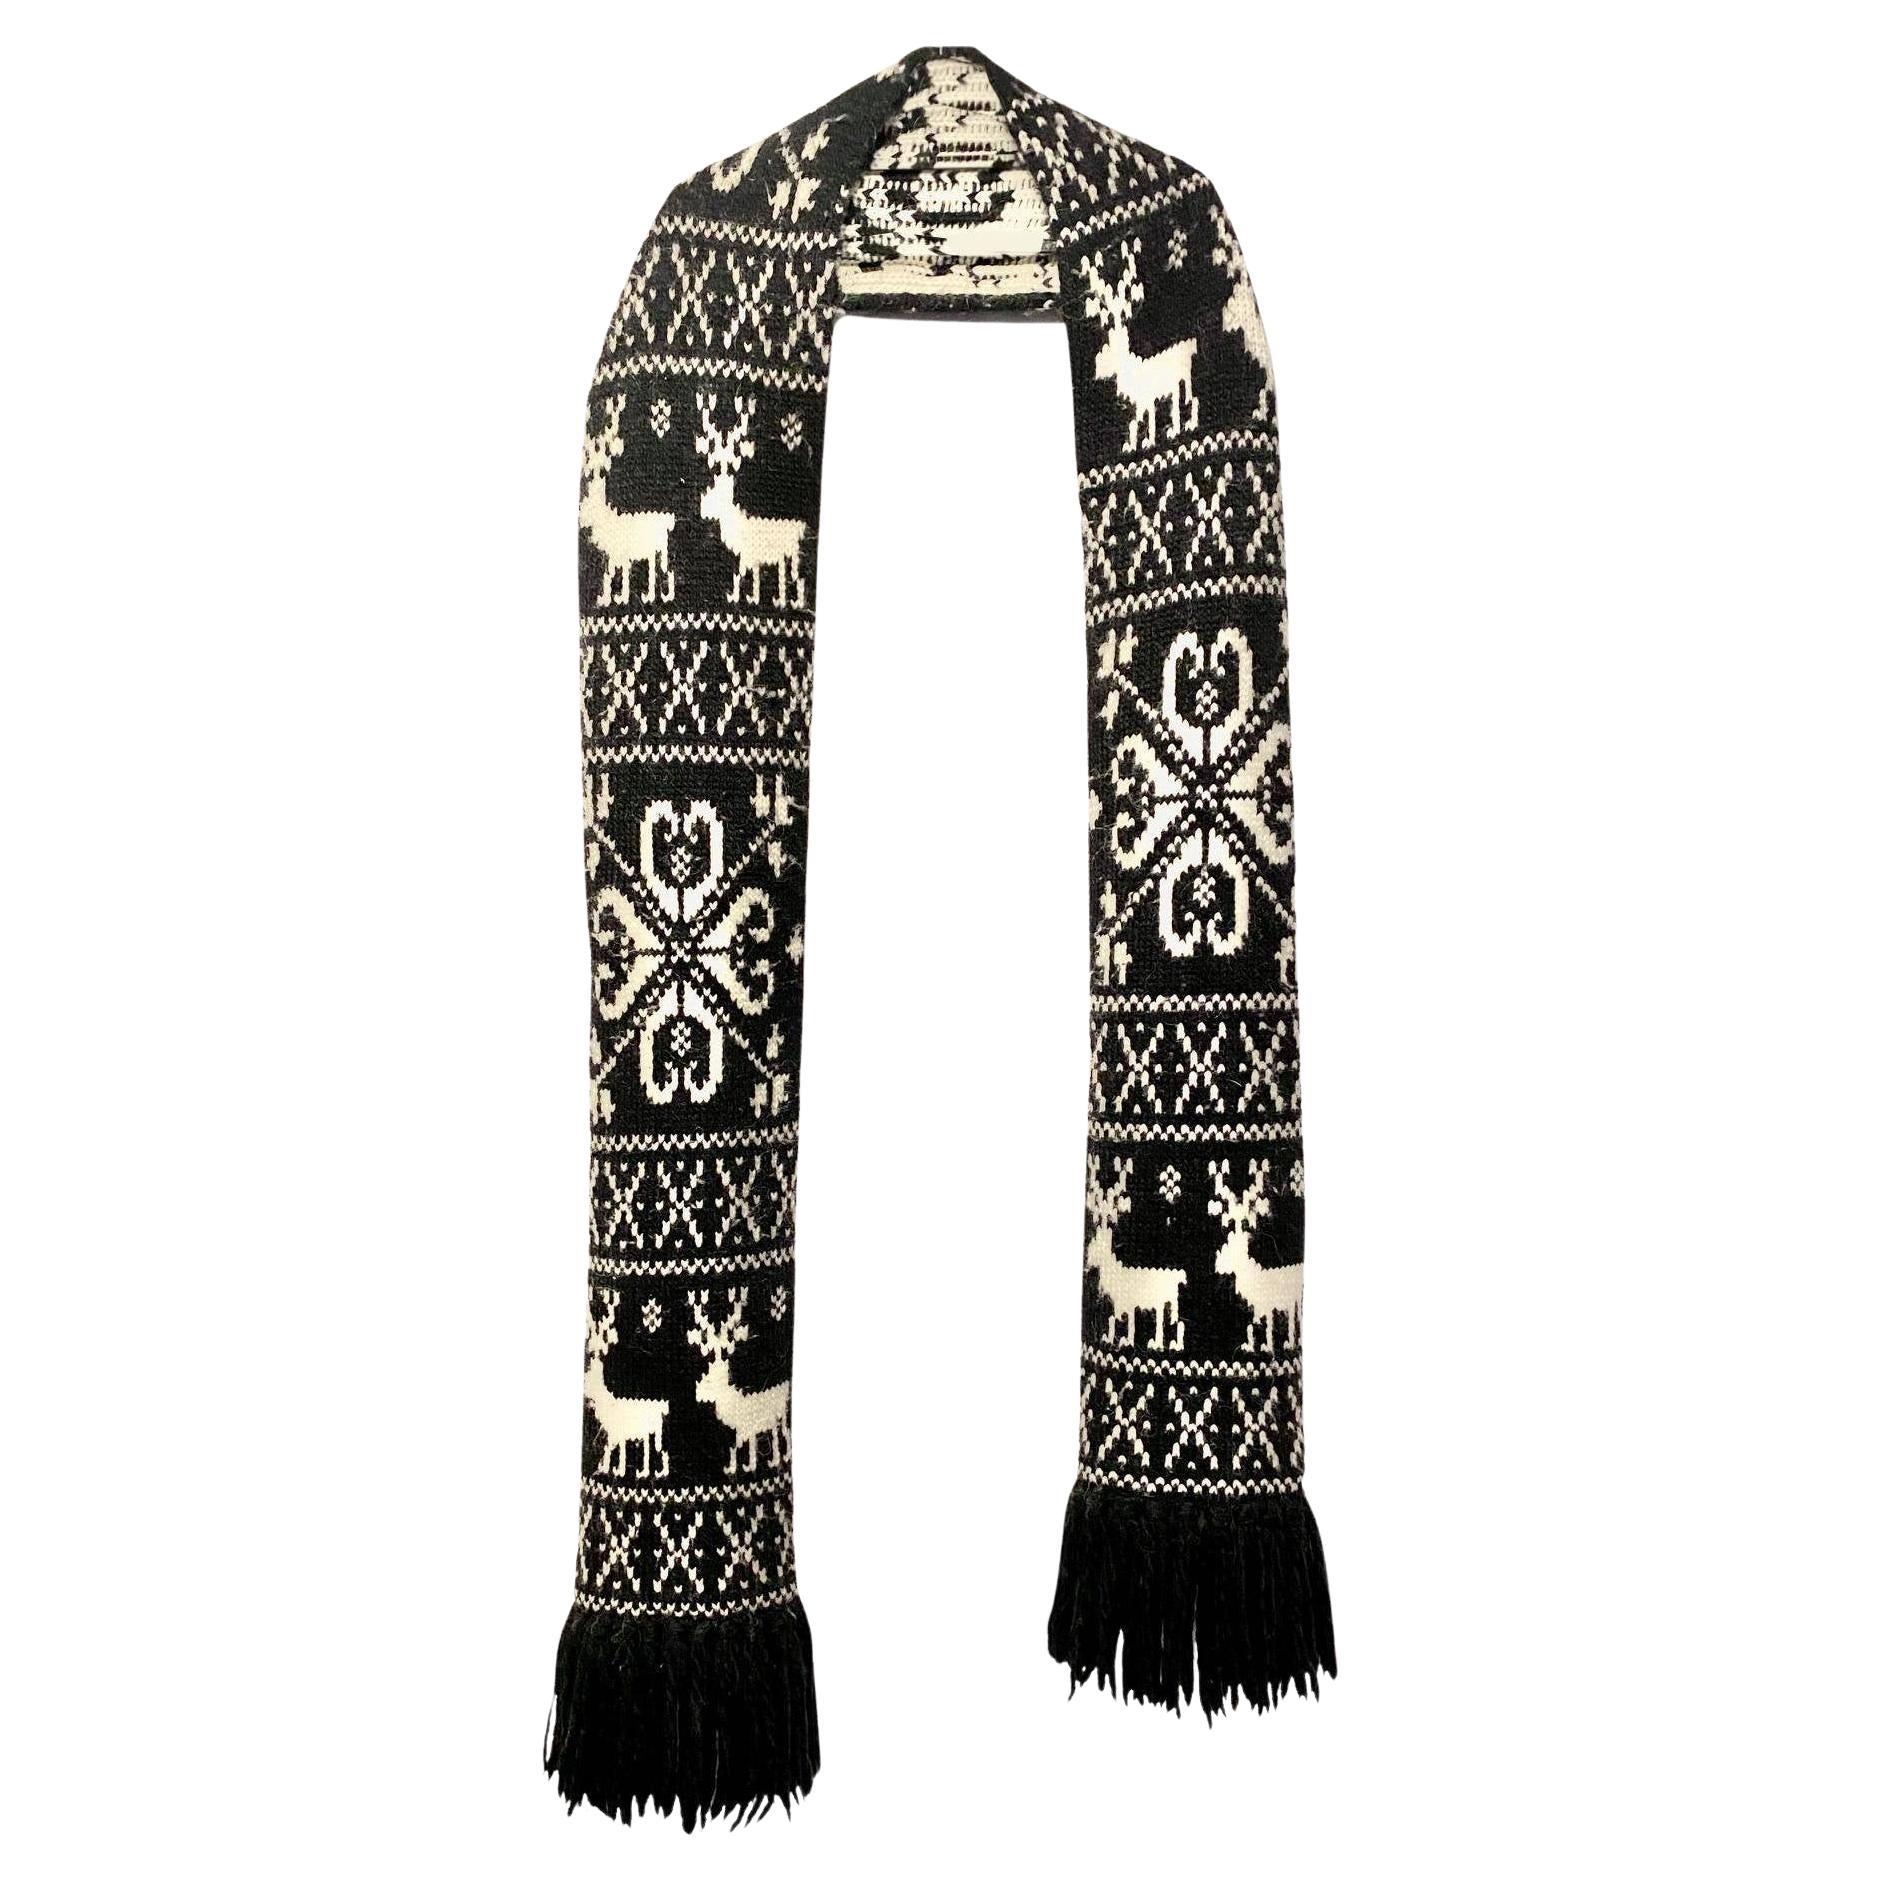 Cette écharpe rare de 270 cm de long, issue de la collection des années 90 de Dolce and Gabbana, est un luxueux mélange de 45 % de laine, 30 % d'acrylique et 25 % d'alpaga, ce qui la rend irrésistiblement douce et élégante. Tissé en Italie selon les